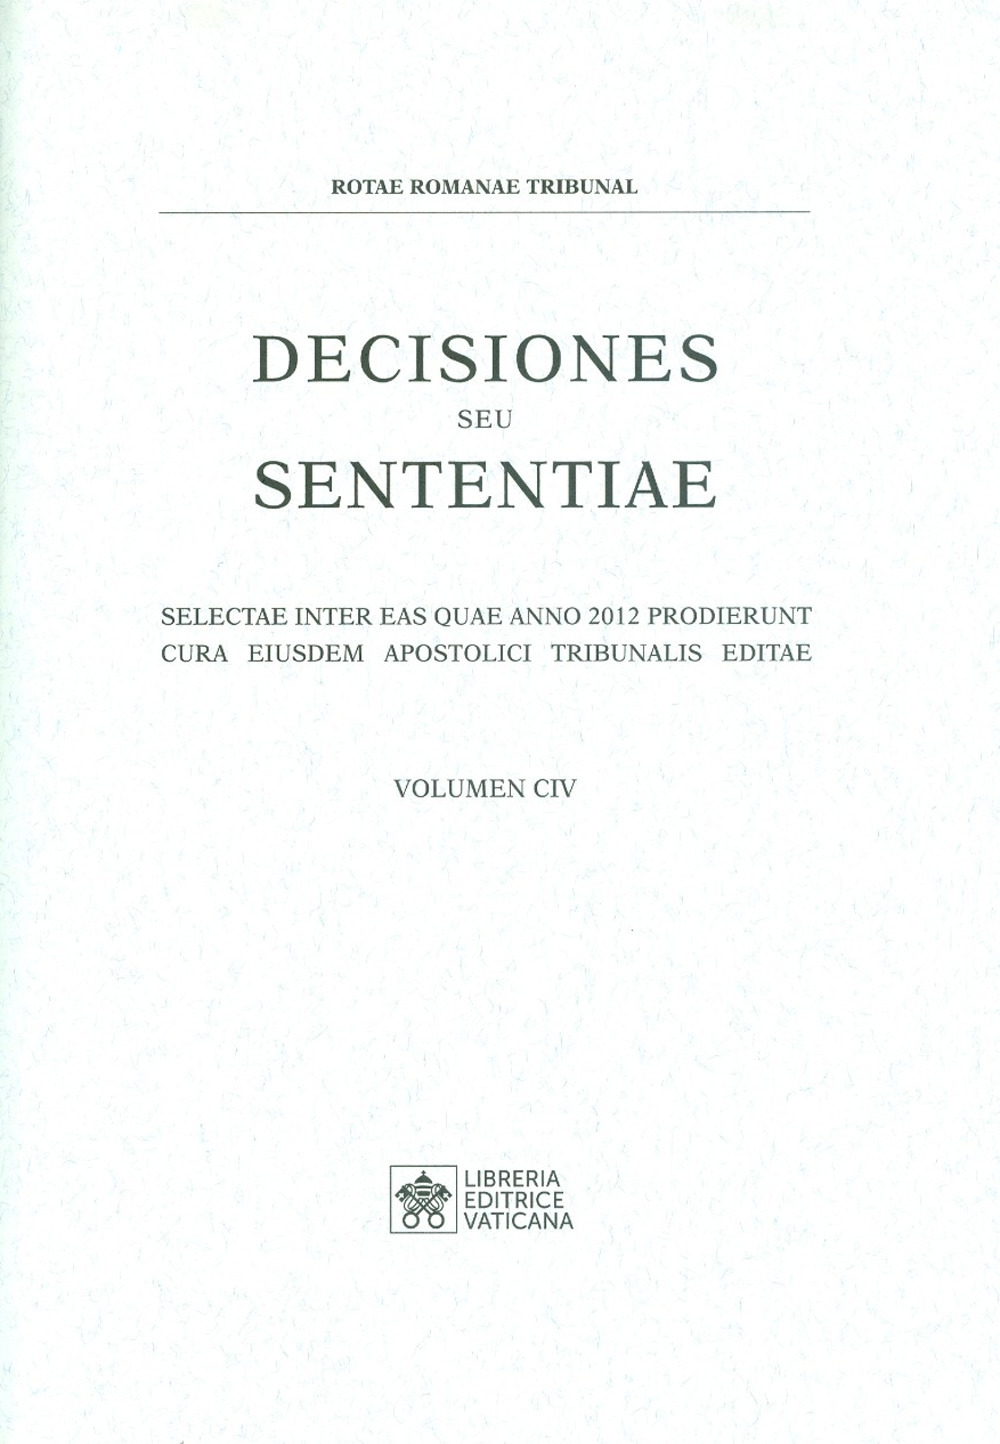 Decisiones seu sententiae. Selectae inter eas quae anno 2012 prodierunt cura eiusdem apostolici tribunalis editae. Vol. 104